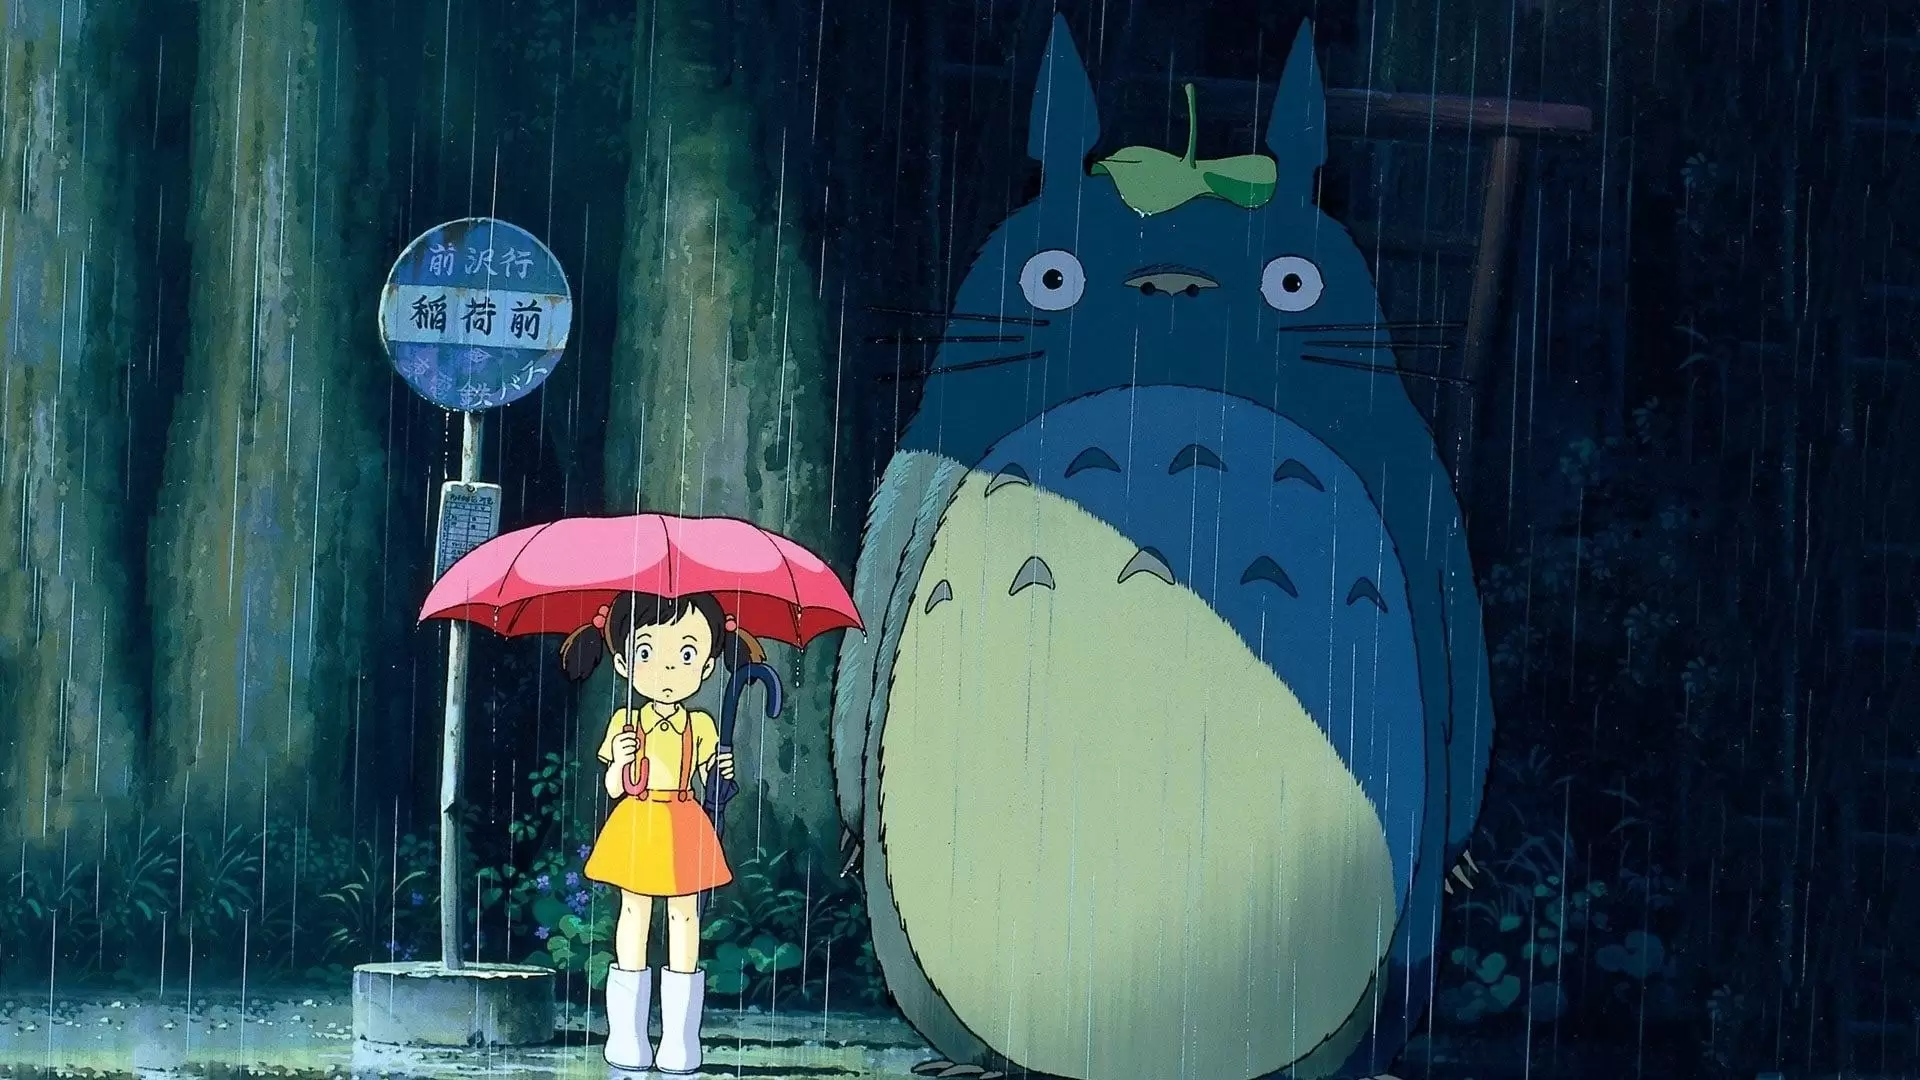 دانلود فیلم My Neighbor Totoro 1988 (همسایه من توتورو) با زیرنویس فارسی و تماشای آنلاین